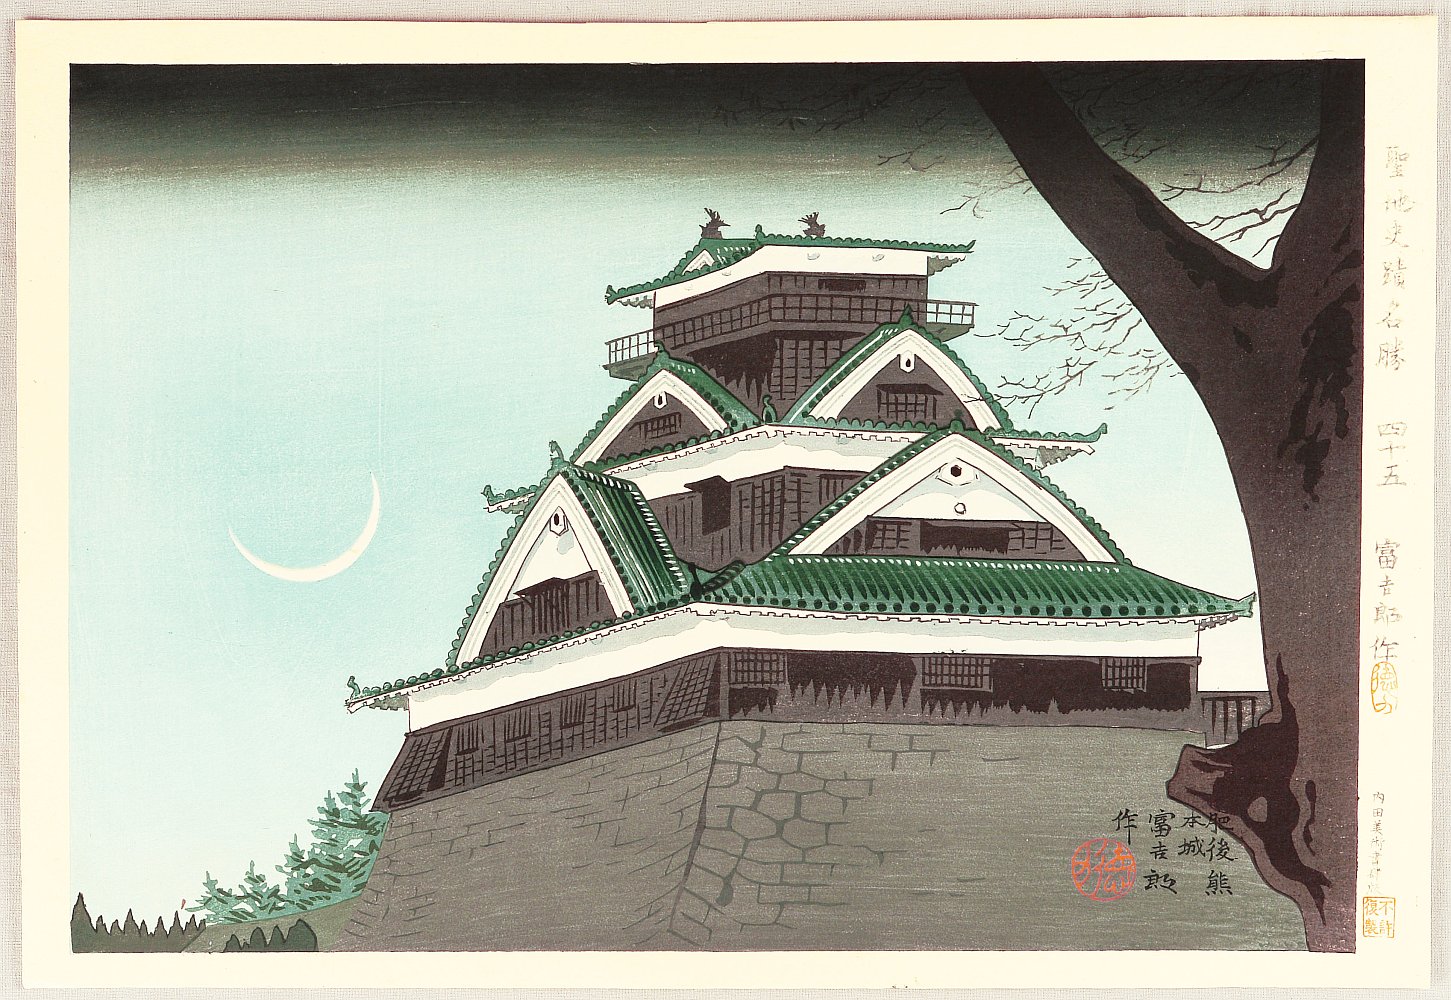 徳力富吉郎: Kumamoto Castle - 肥後 熊本城 - Ohmi Gallery - 浮世絵検索